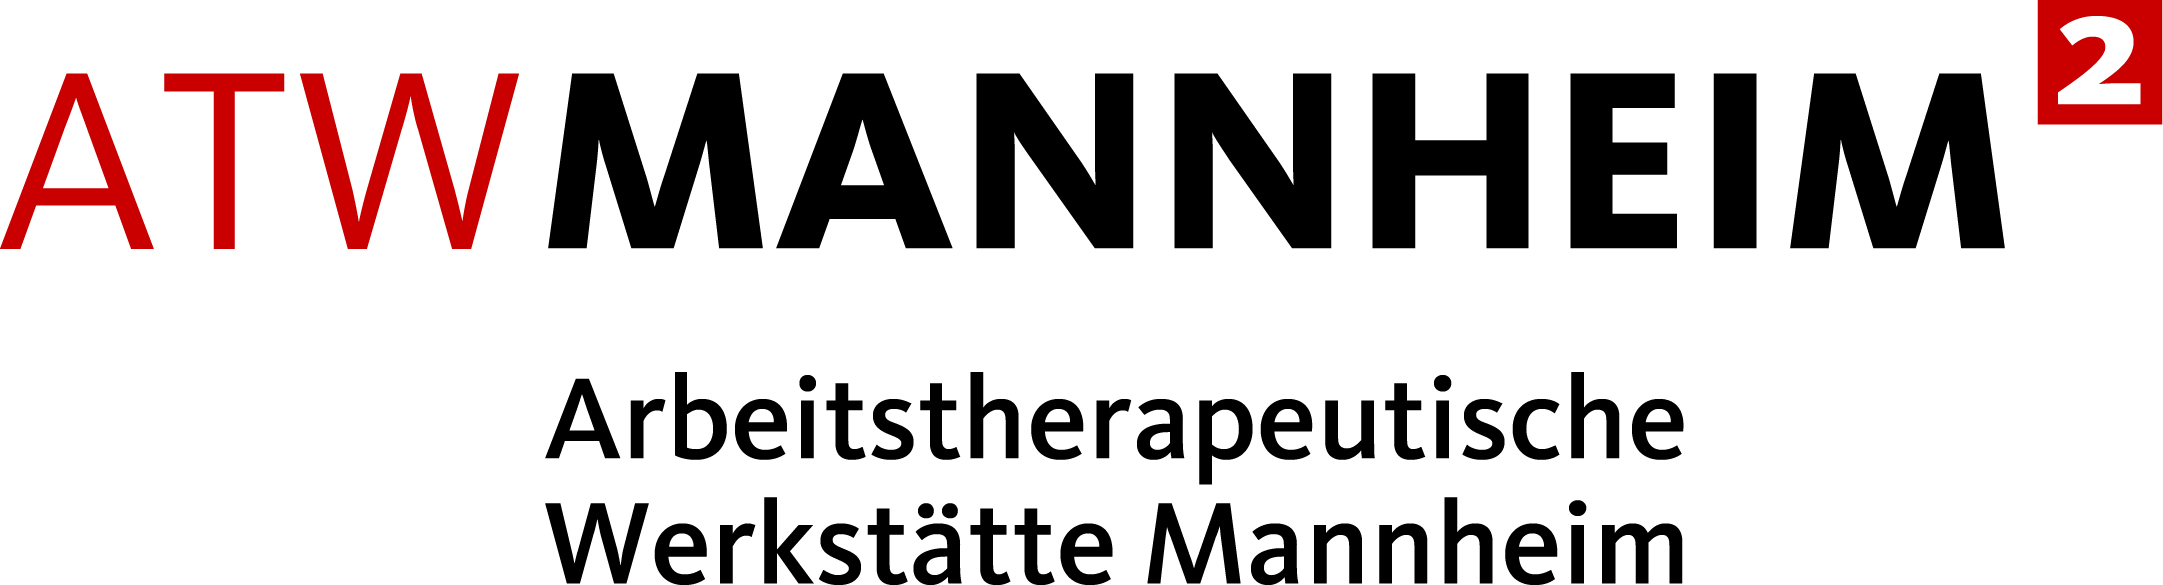 Arbeitstherapeutische Werkstätte Mannheim GmbH